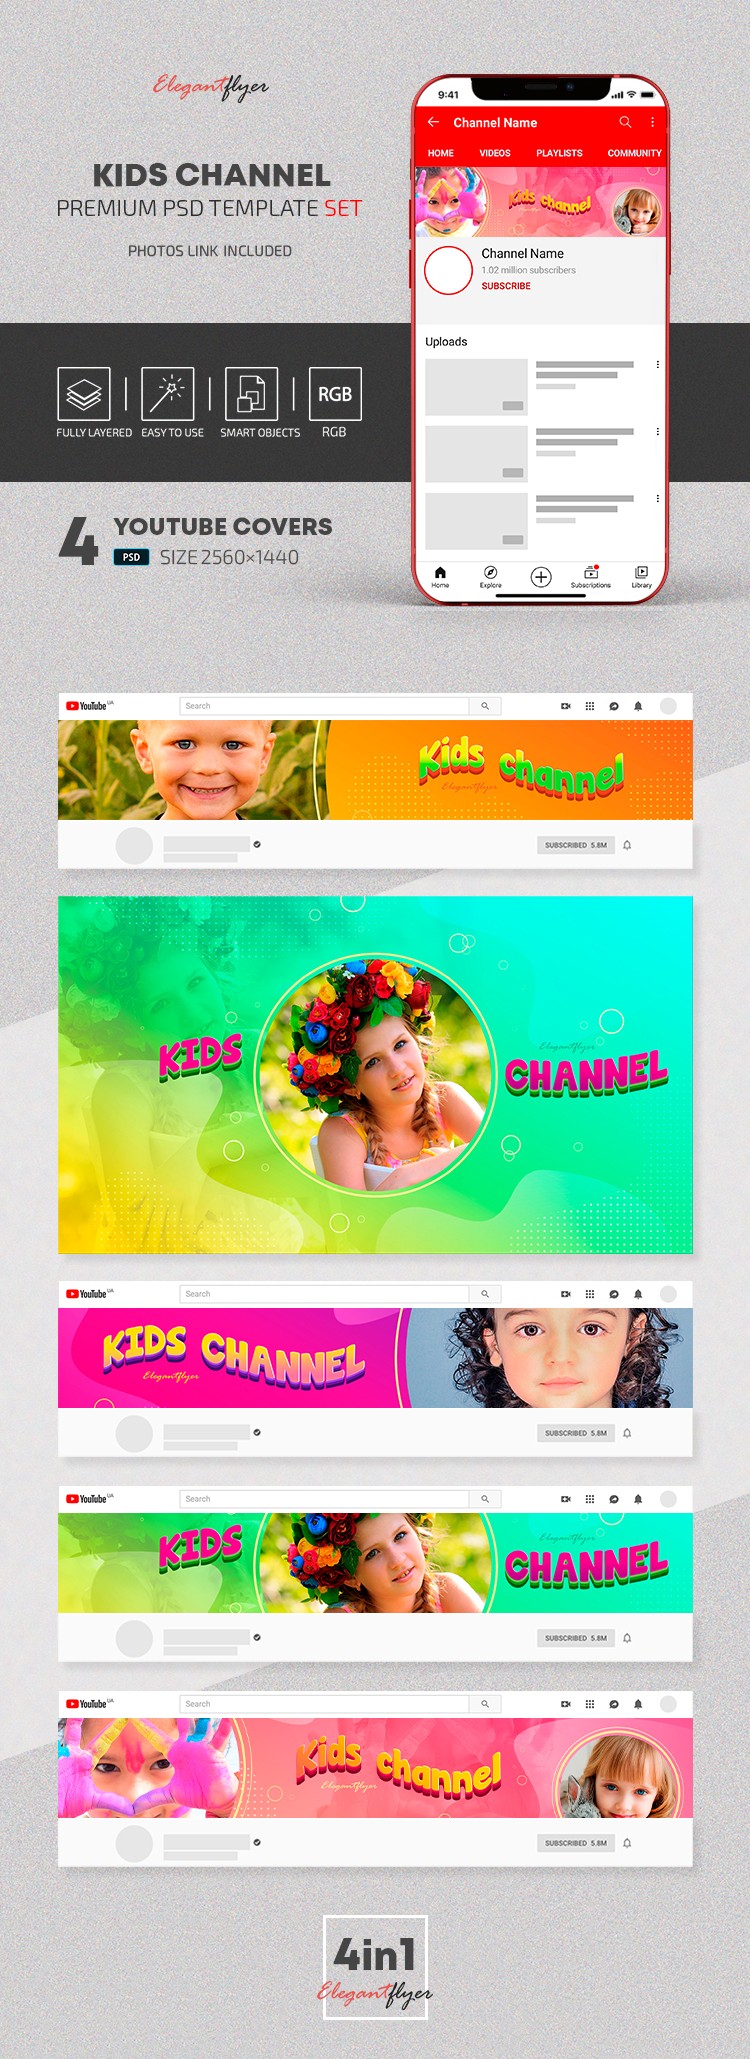 Kids Channel Youtube by ElegantFlyer